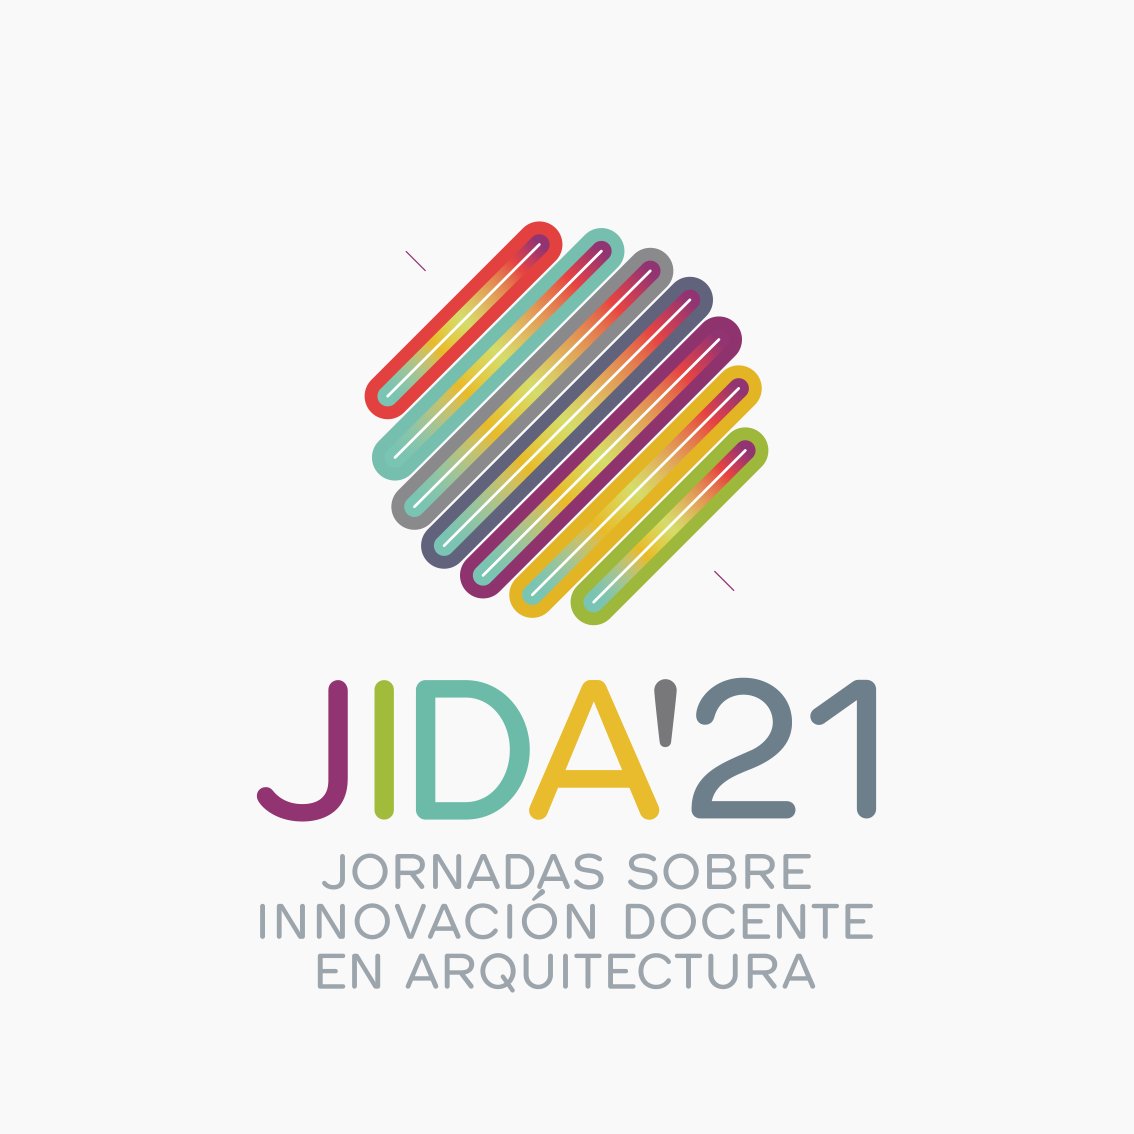 JIDA'21. Los proyectos colaborativos como estrategia docente